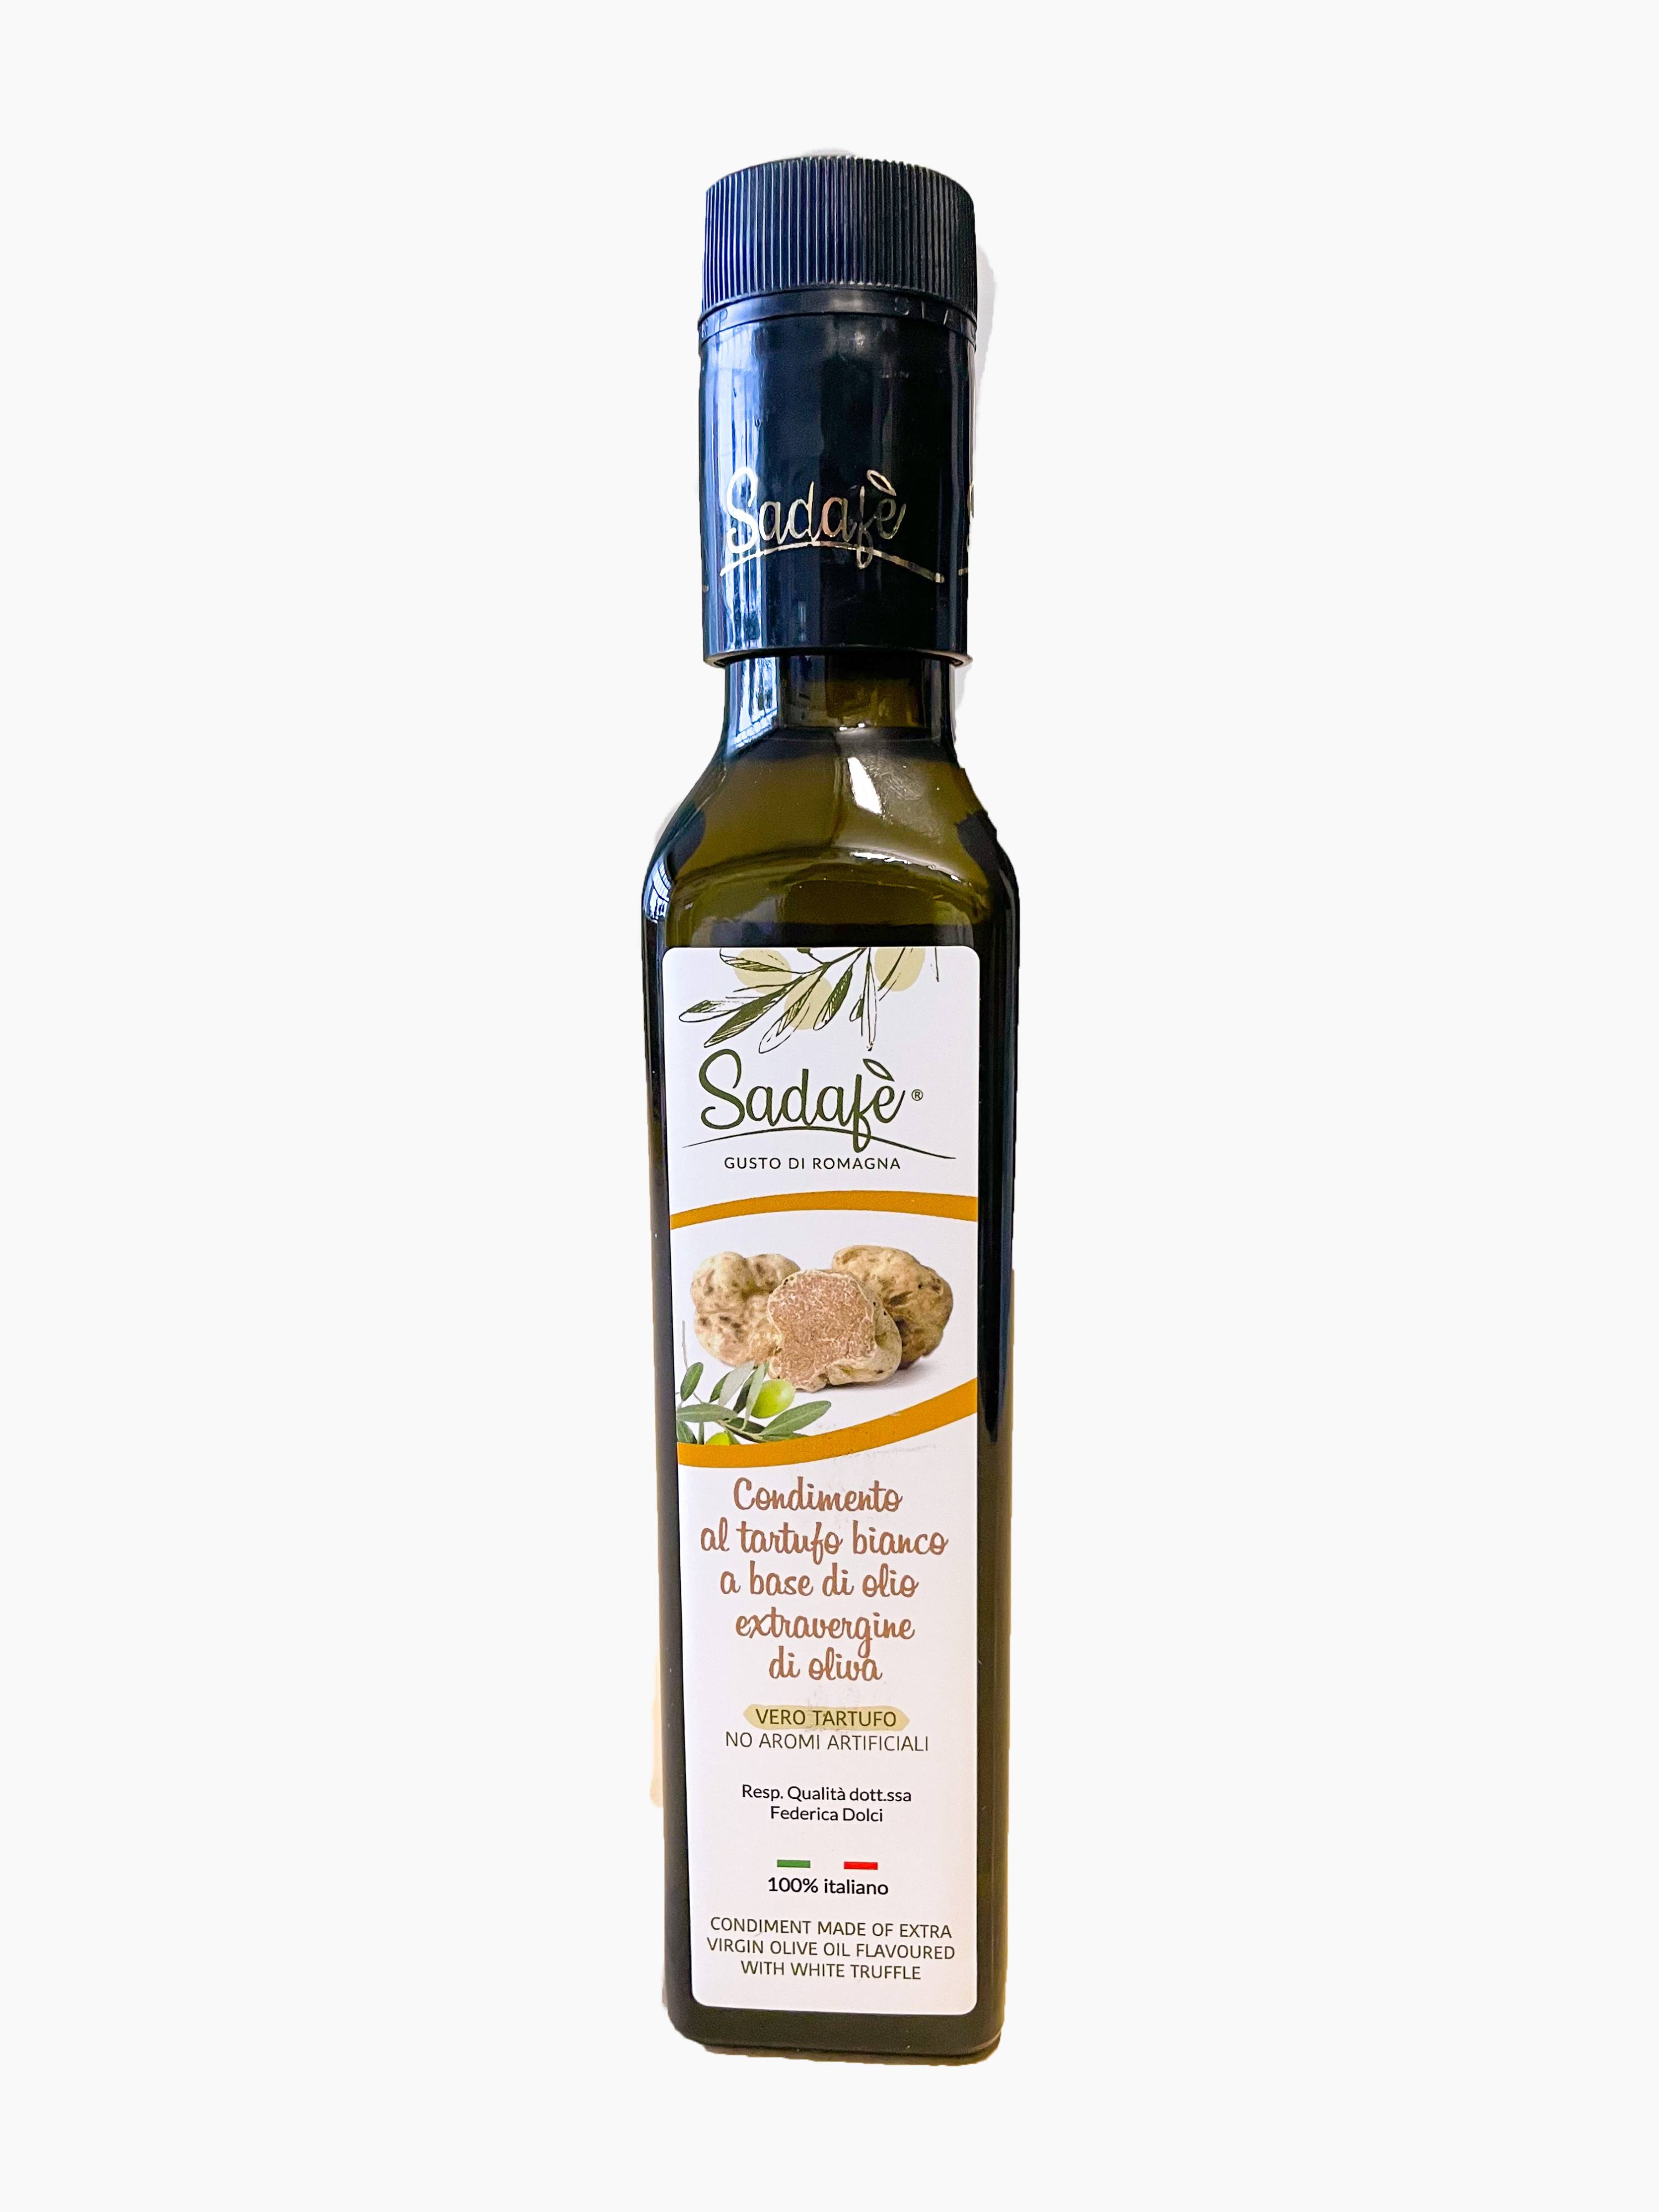 Condimento al tartufo bianco a base di olio extravergine di oliva (99%)  250ml biologico: acquista online su Sadafè